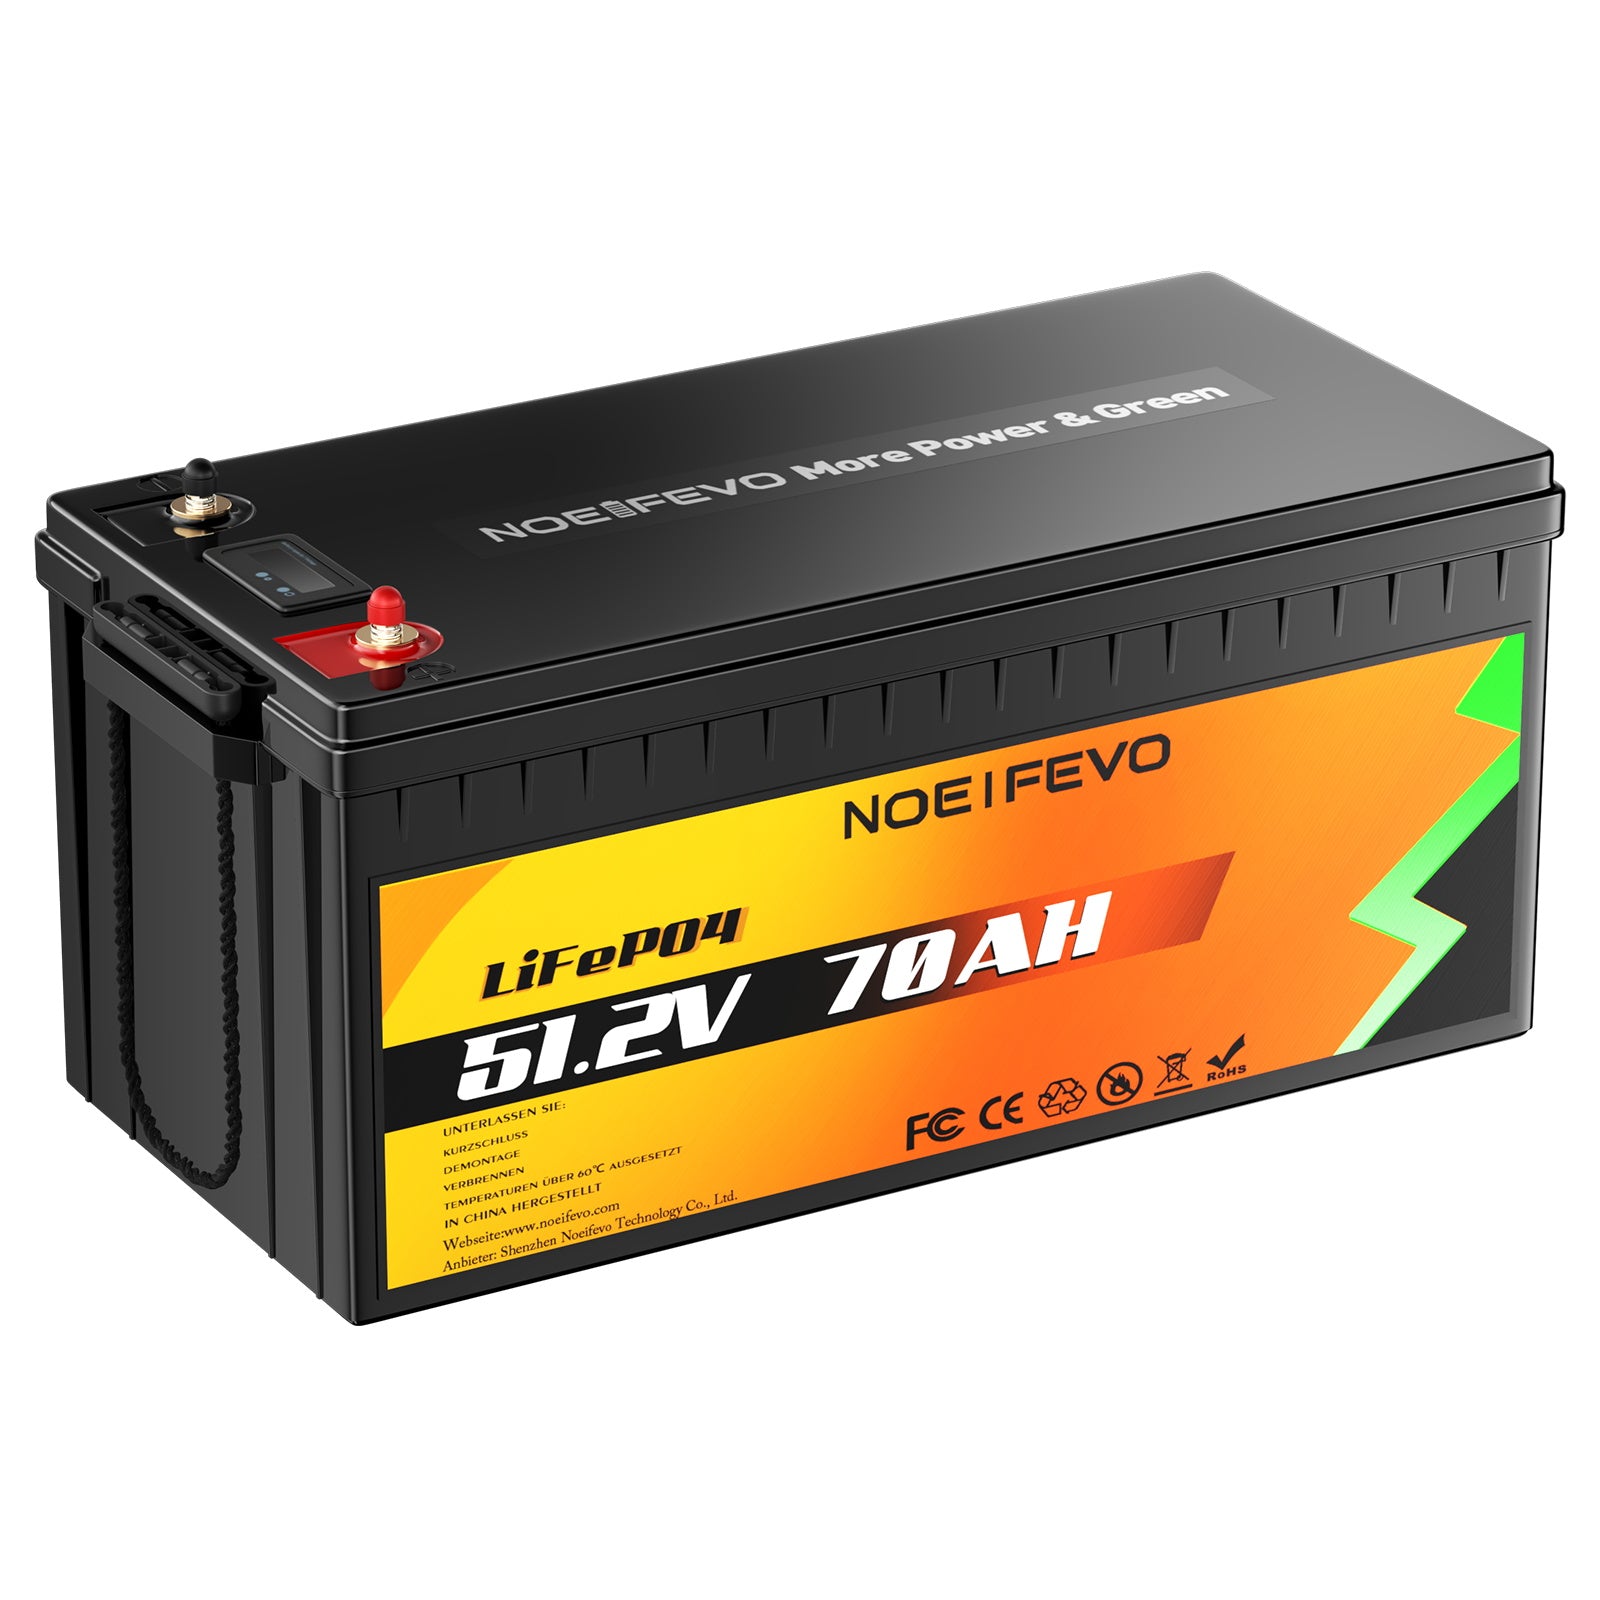 NOEIFEVO D4870 51.2V 70AH Bateria de Fosfato de Lítio LiFePO4 Bateria com 80A BMS